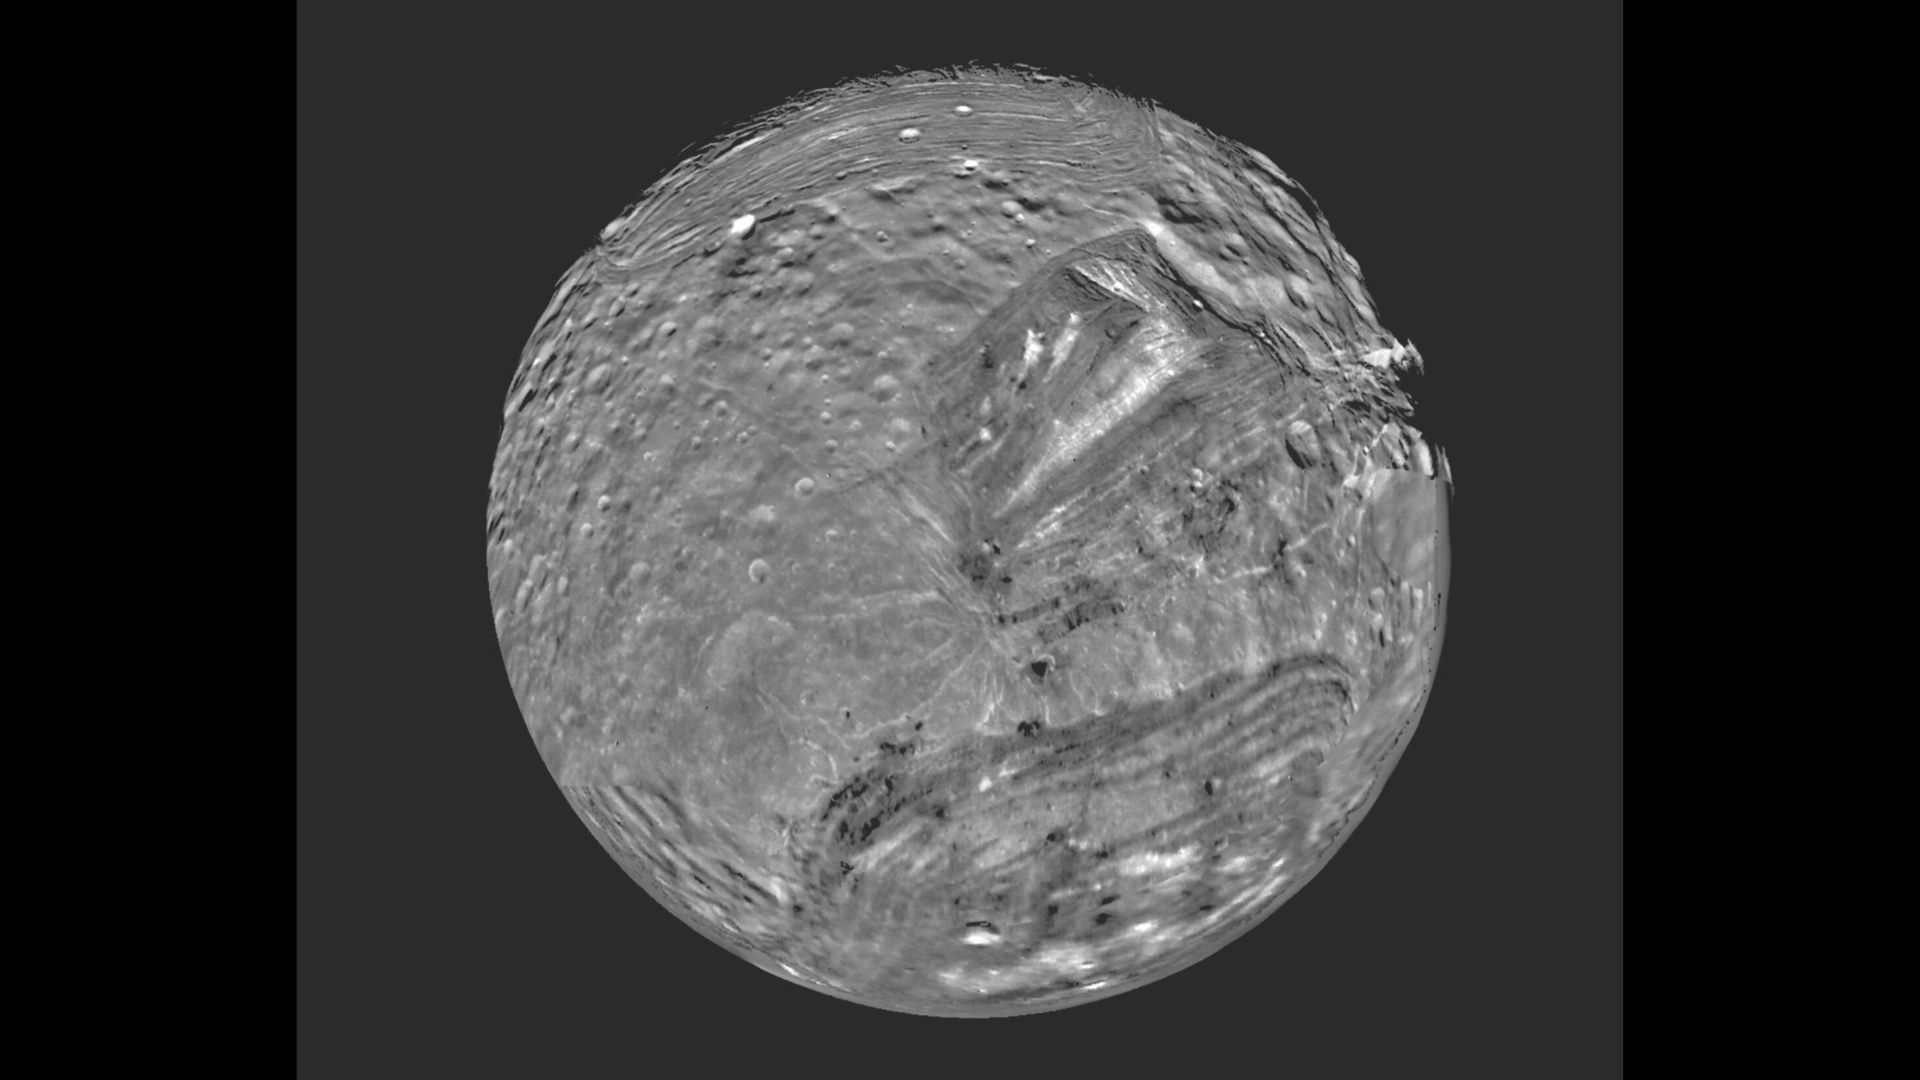 Imagem de 1986 da Voyager 2 de Miranda, uma lua de Urano com o nome da filha de Shakespeare, Prospero "tempestade."